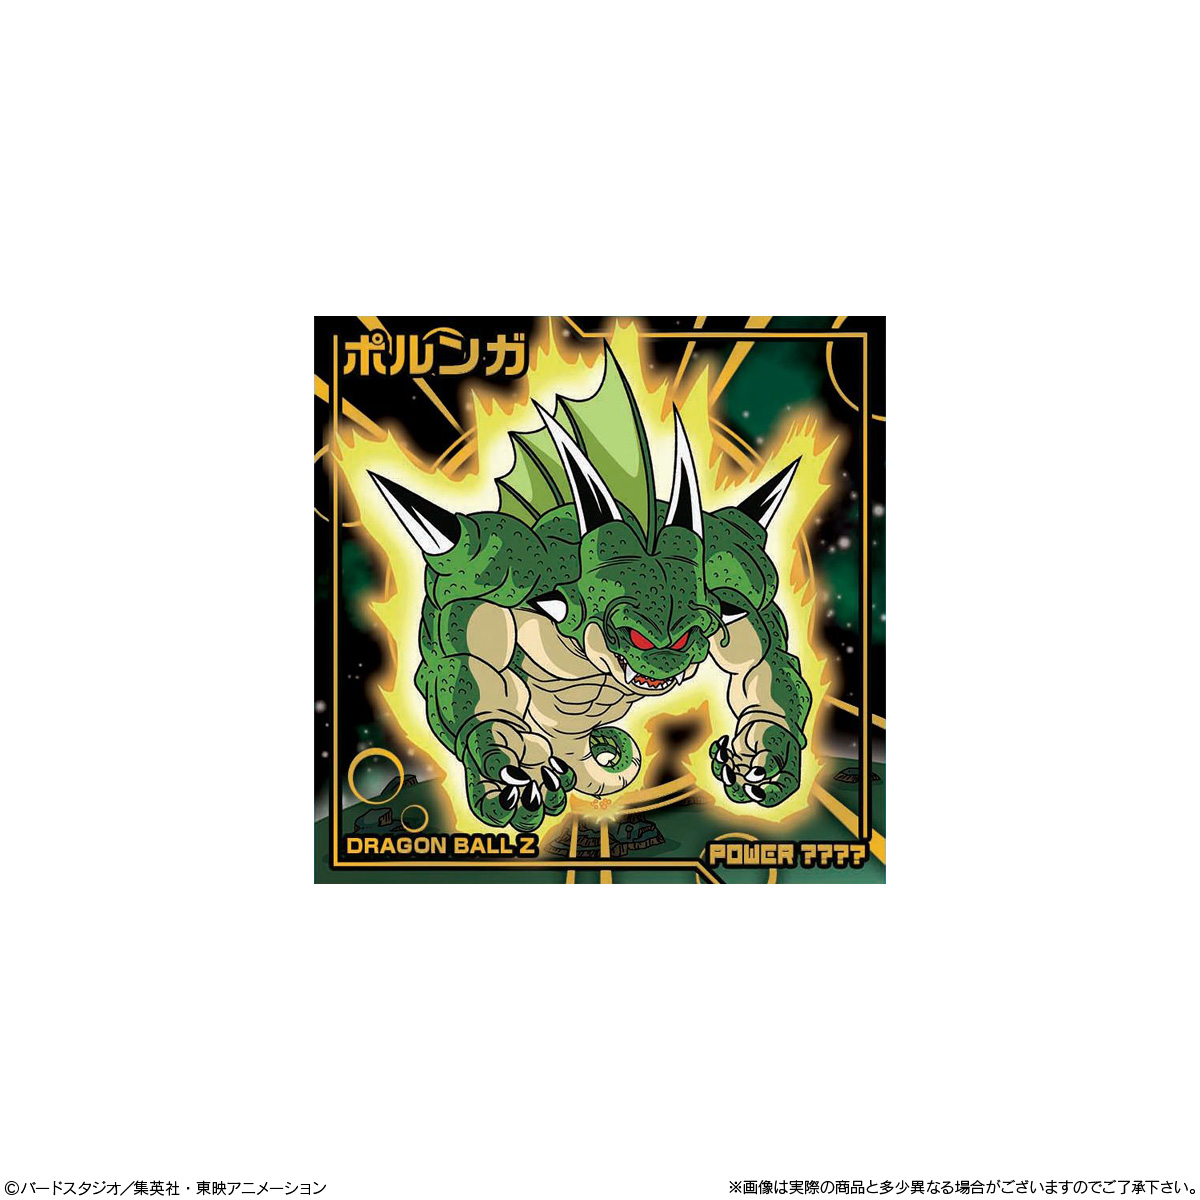 【食玩】ドラゴンボール超『ドラゴンボール超戦士シールウエハース超 願いを叶える神の龍』20個入りBOX-004